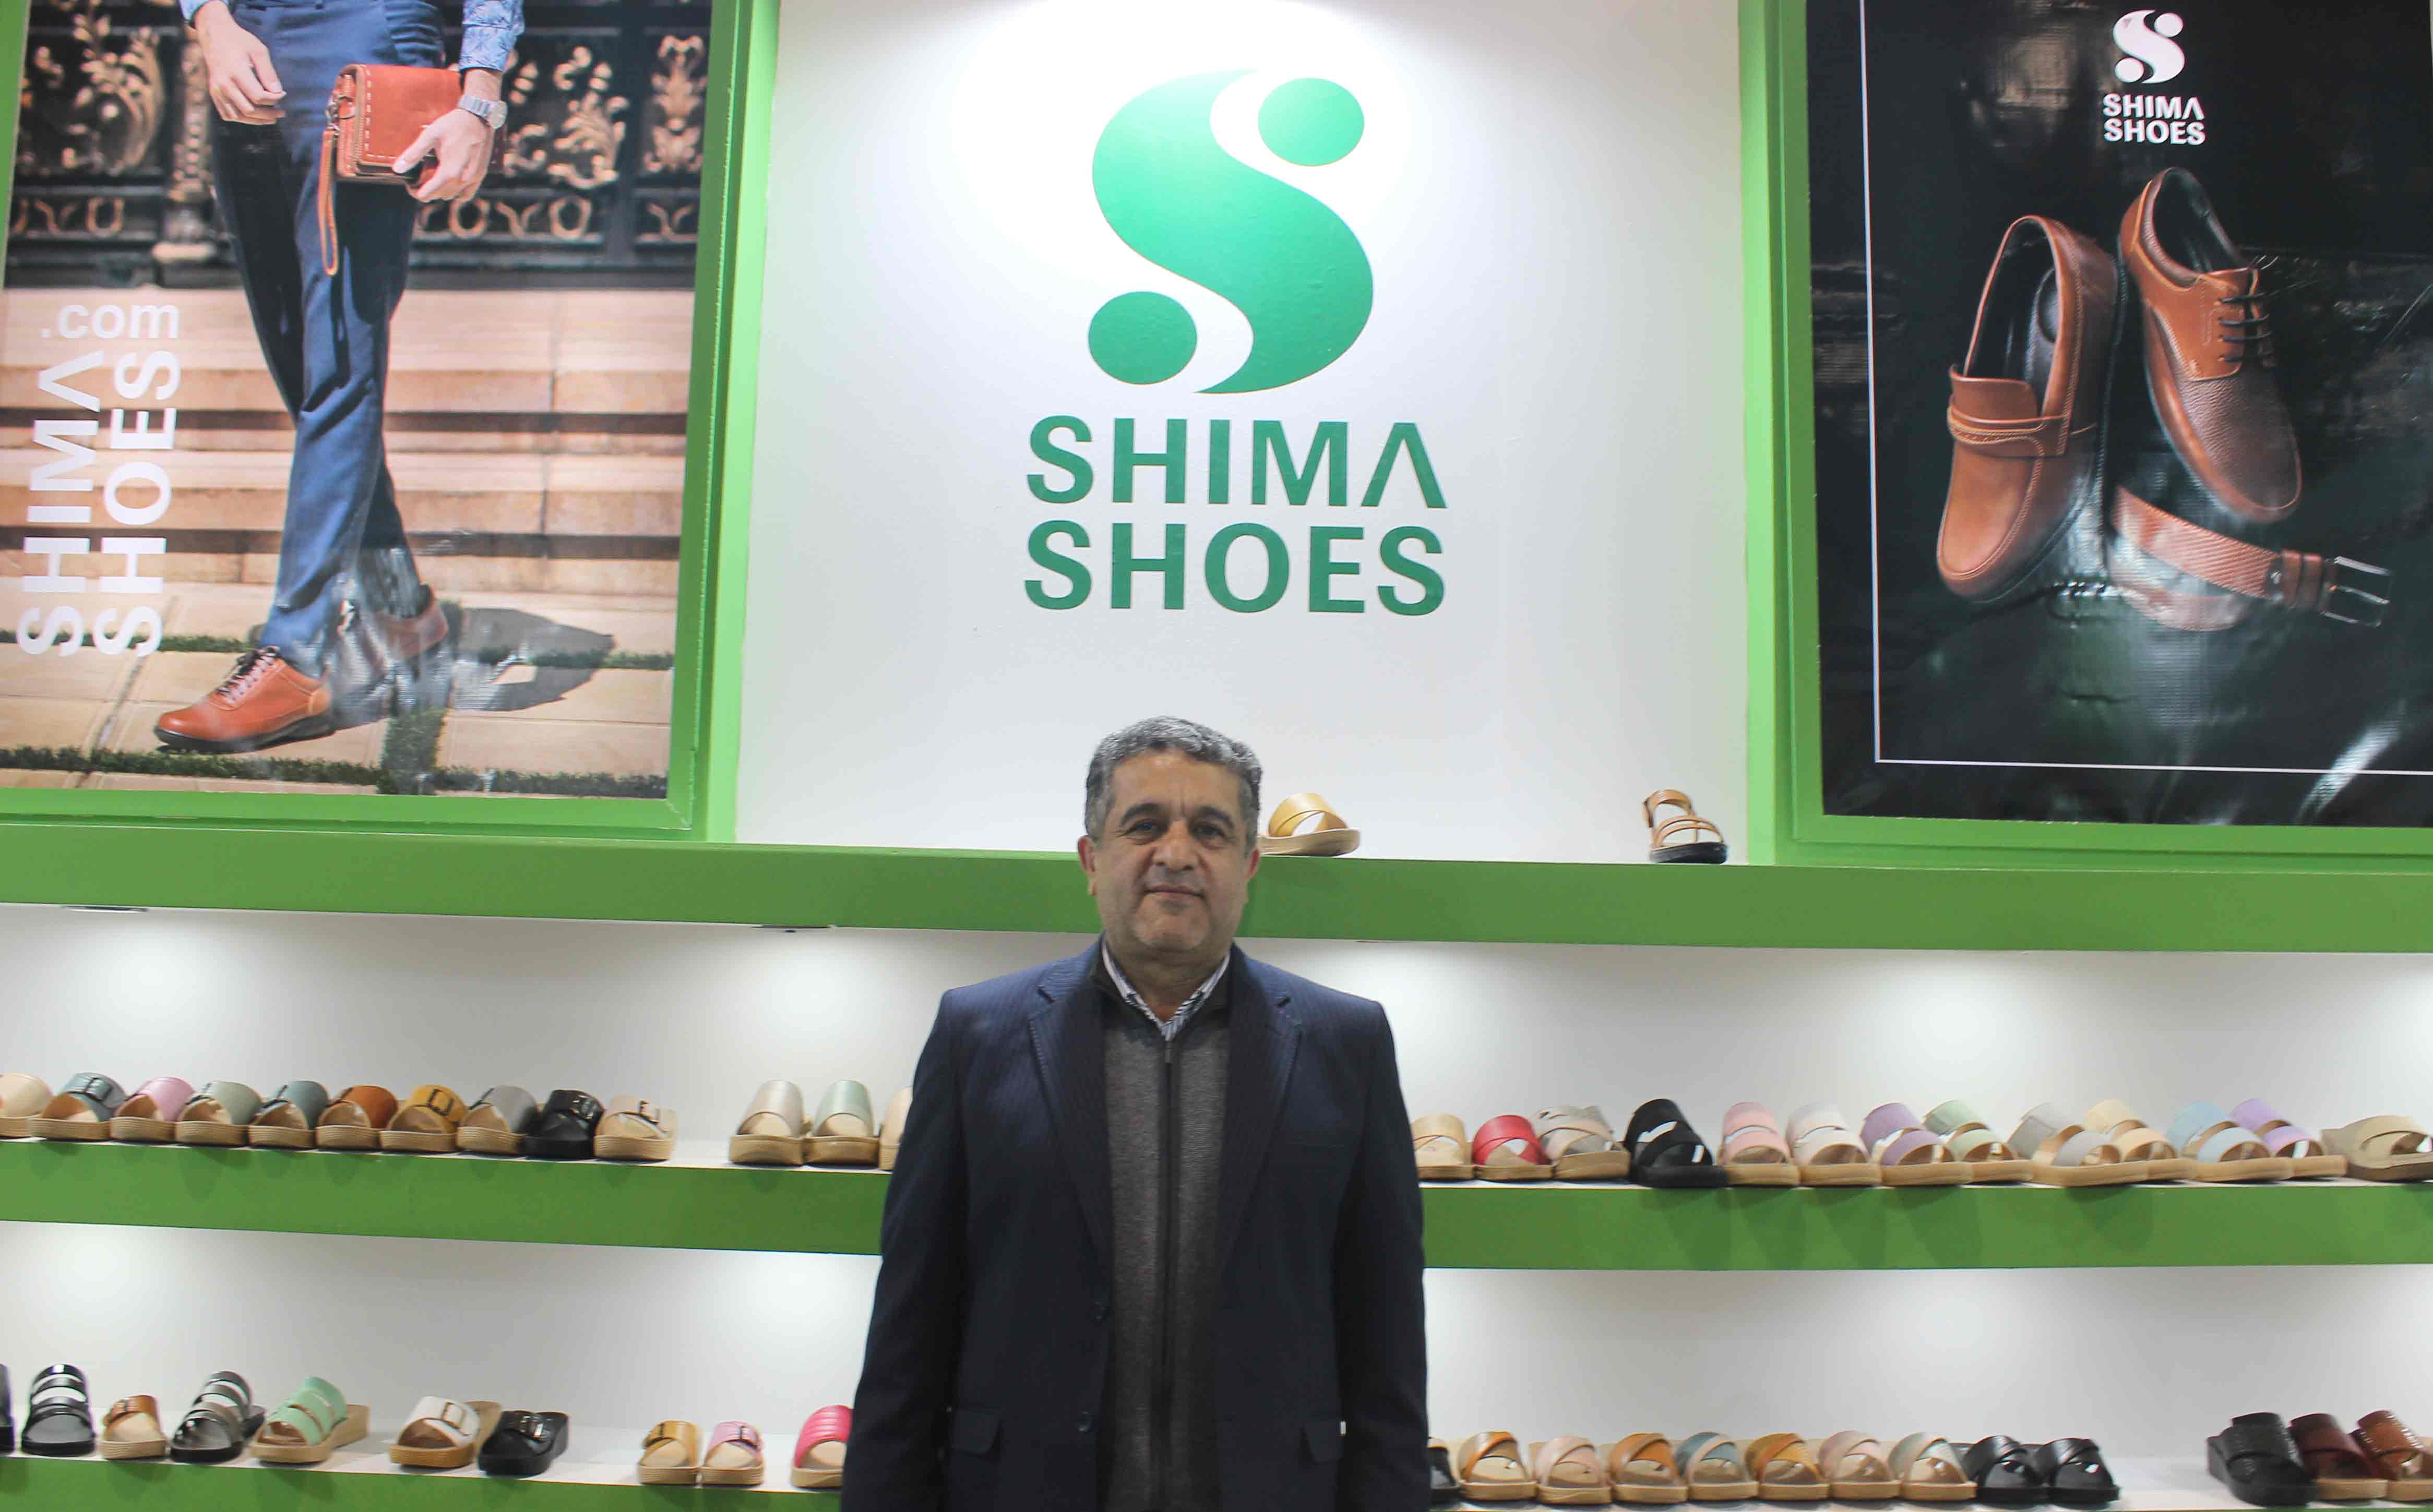 کفش شیما یکی ازصادرکنندگان برترکشور با ۱۷ سال سابقه صادرات است/ قیمت مواد اولیه کفش درحال افزایش است/ محصولات کفش شیما به دلیل کیفیت بالا، قابل رقابت با برندهای صاحب نام خارجی هستند  